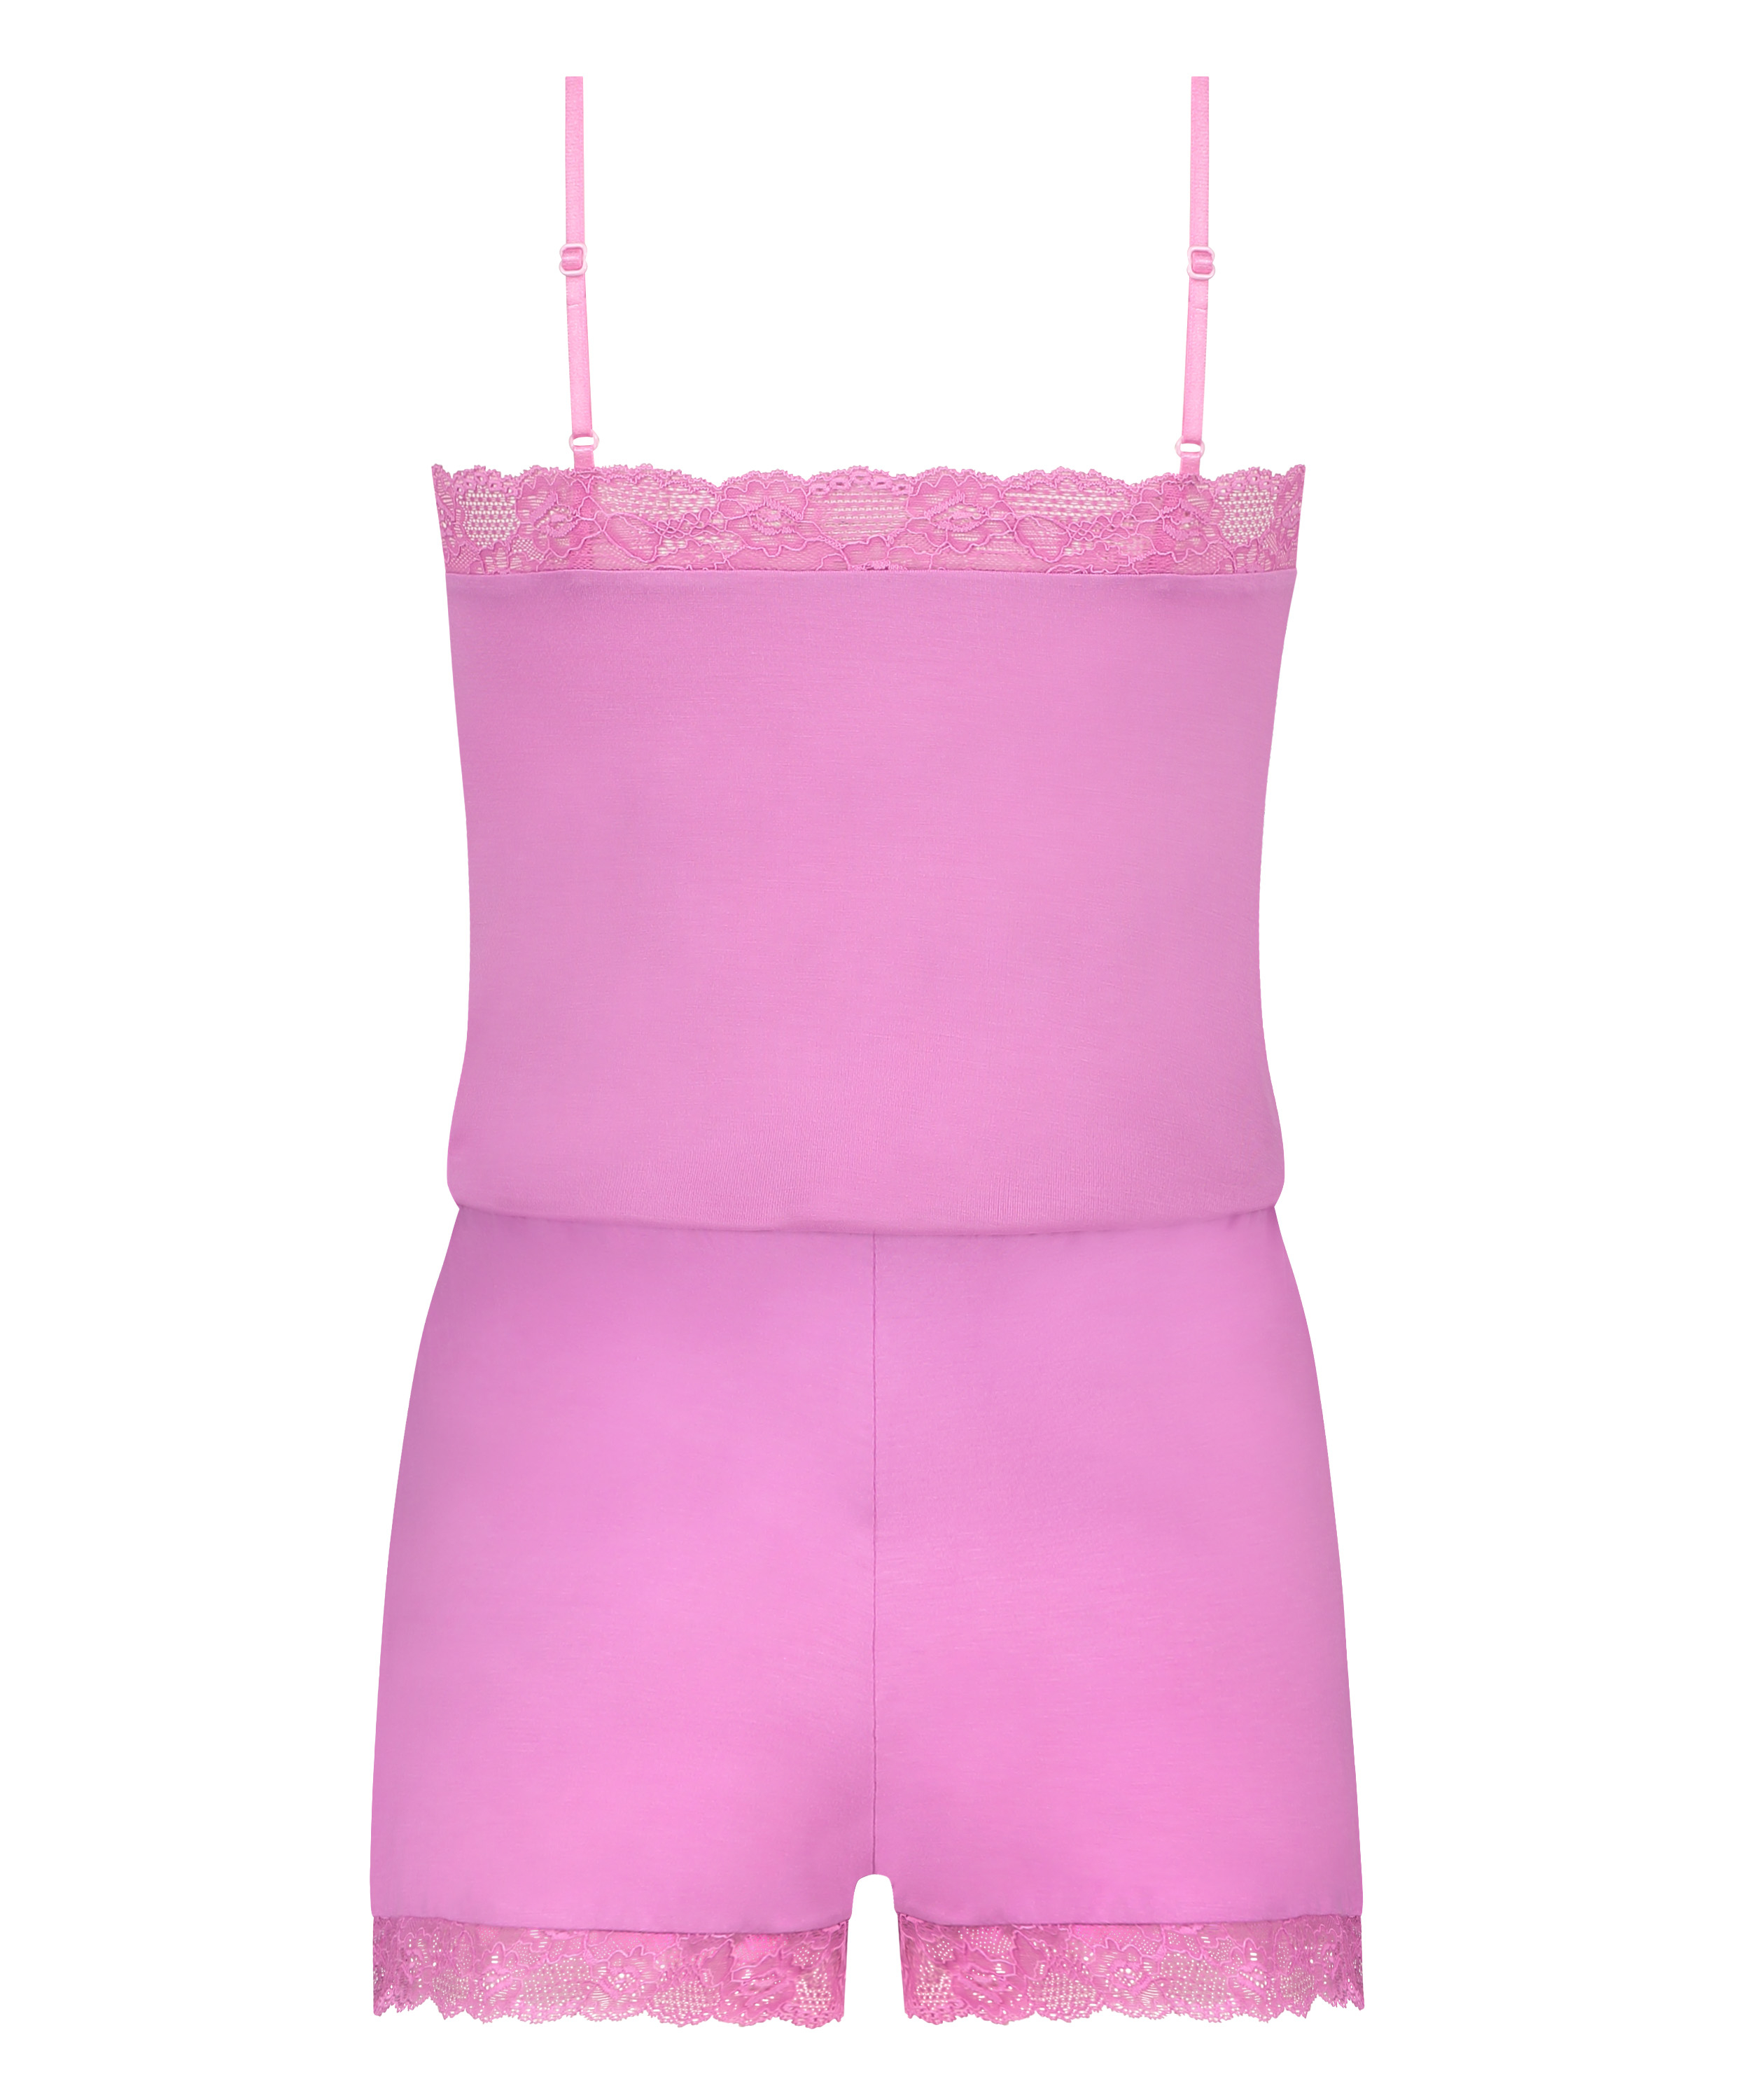 Cami Short Pyjama Set, Pink, main